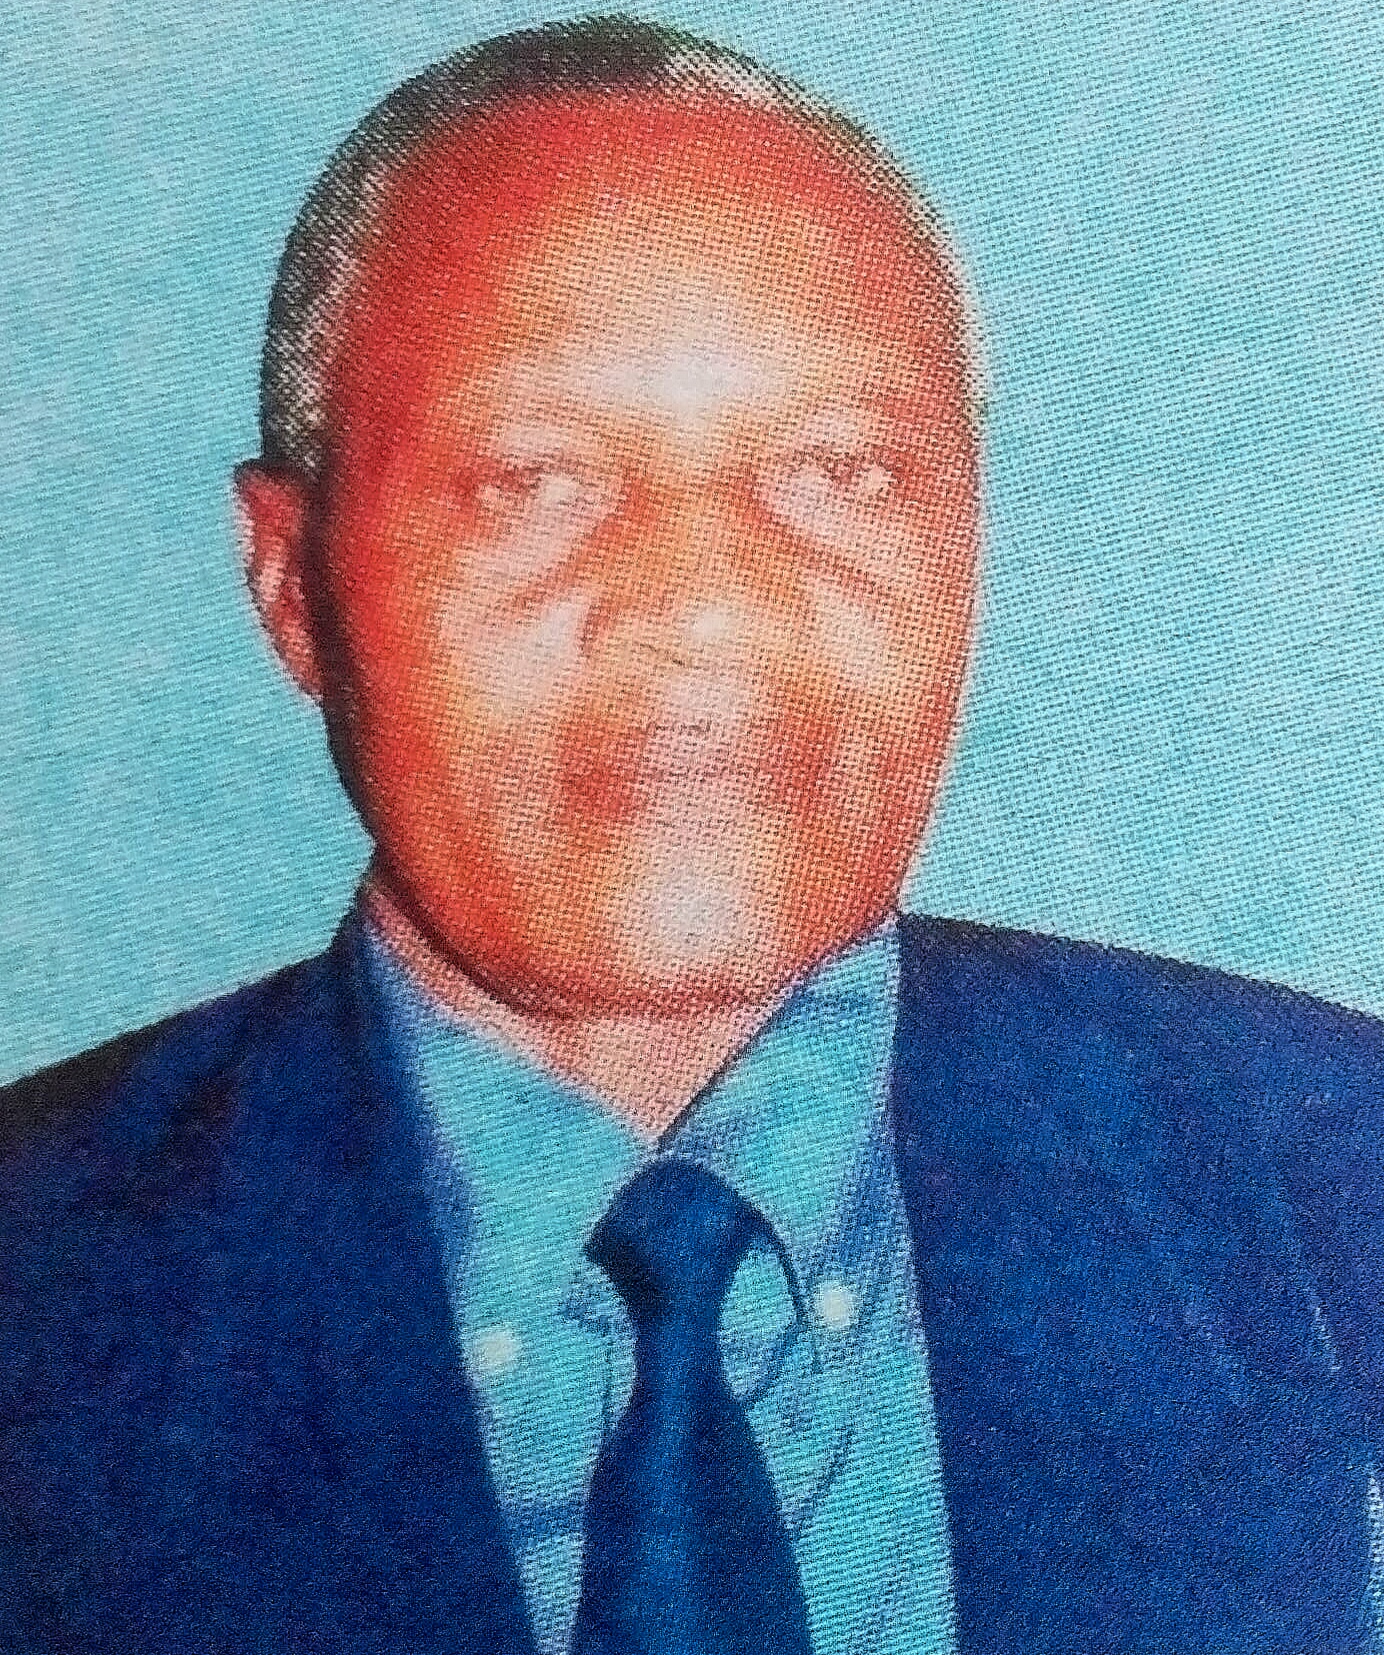 Obituary Image of David Kinyua Mbagia